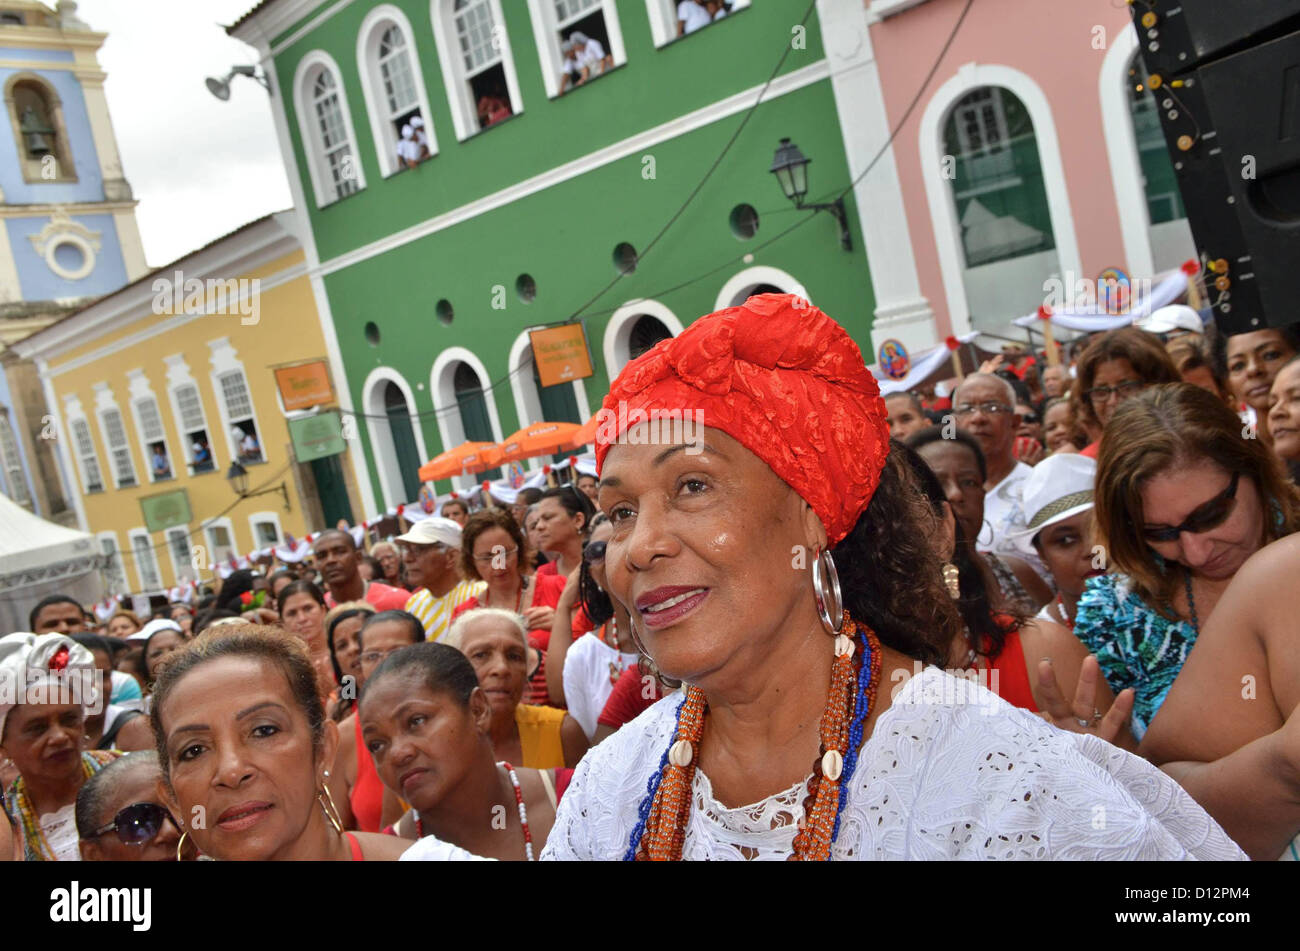 Devoti di prendere parte a una processione celebra Santa Barbara, come parte di un ciclo di festività religiose in Salvador, Bahia, nel nordest del Brasile, il 4 dicembre 2012. Foto: ERIK SALLES/BAPRESS Foto Stock